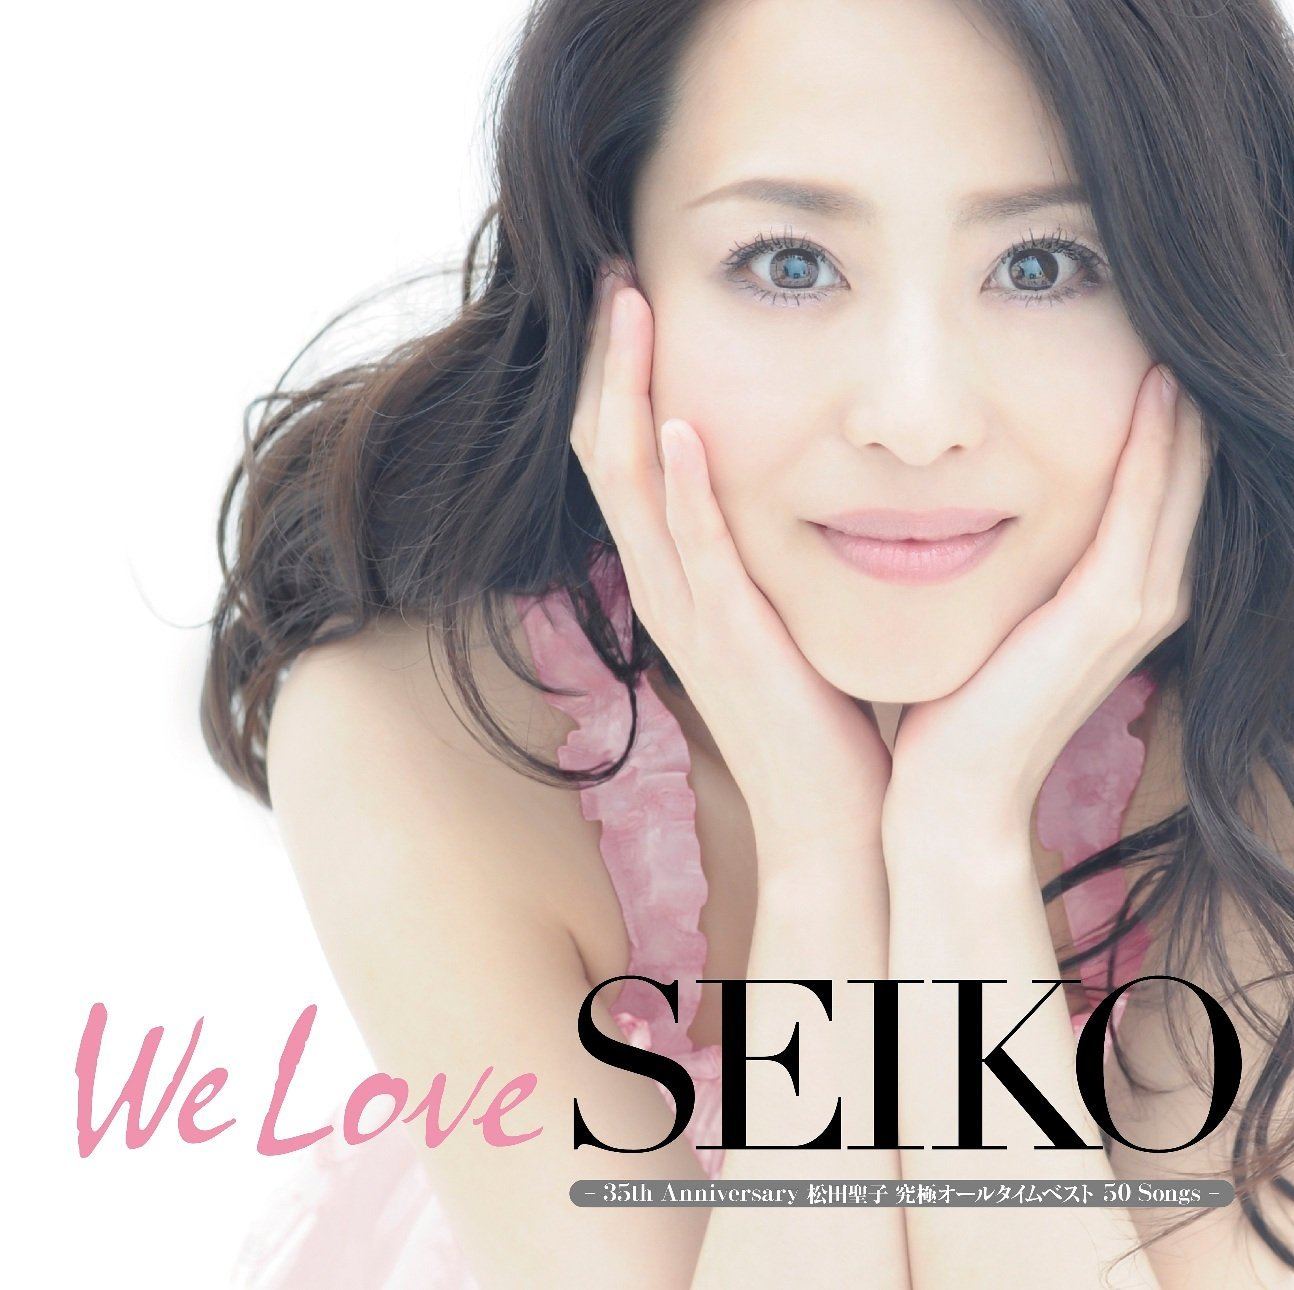 We Love Seiko - 35th Anniversary Matsuda Seiko Kyukyoku All Time ...